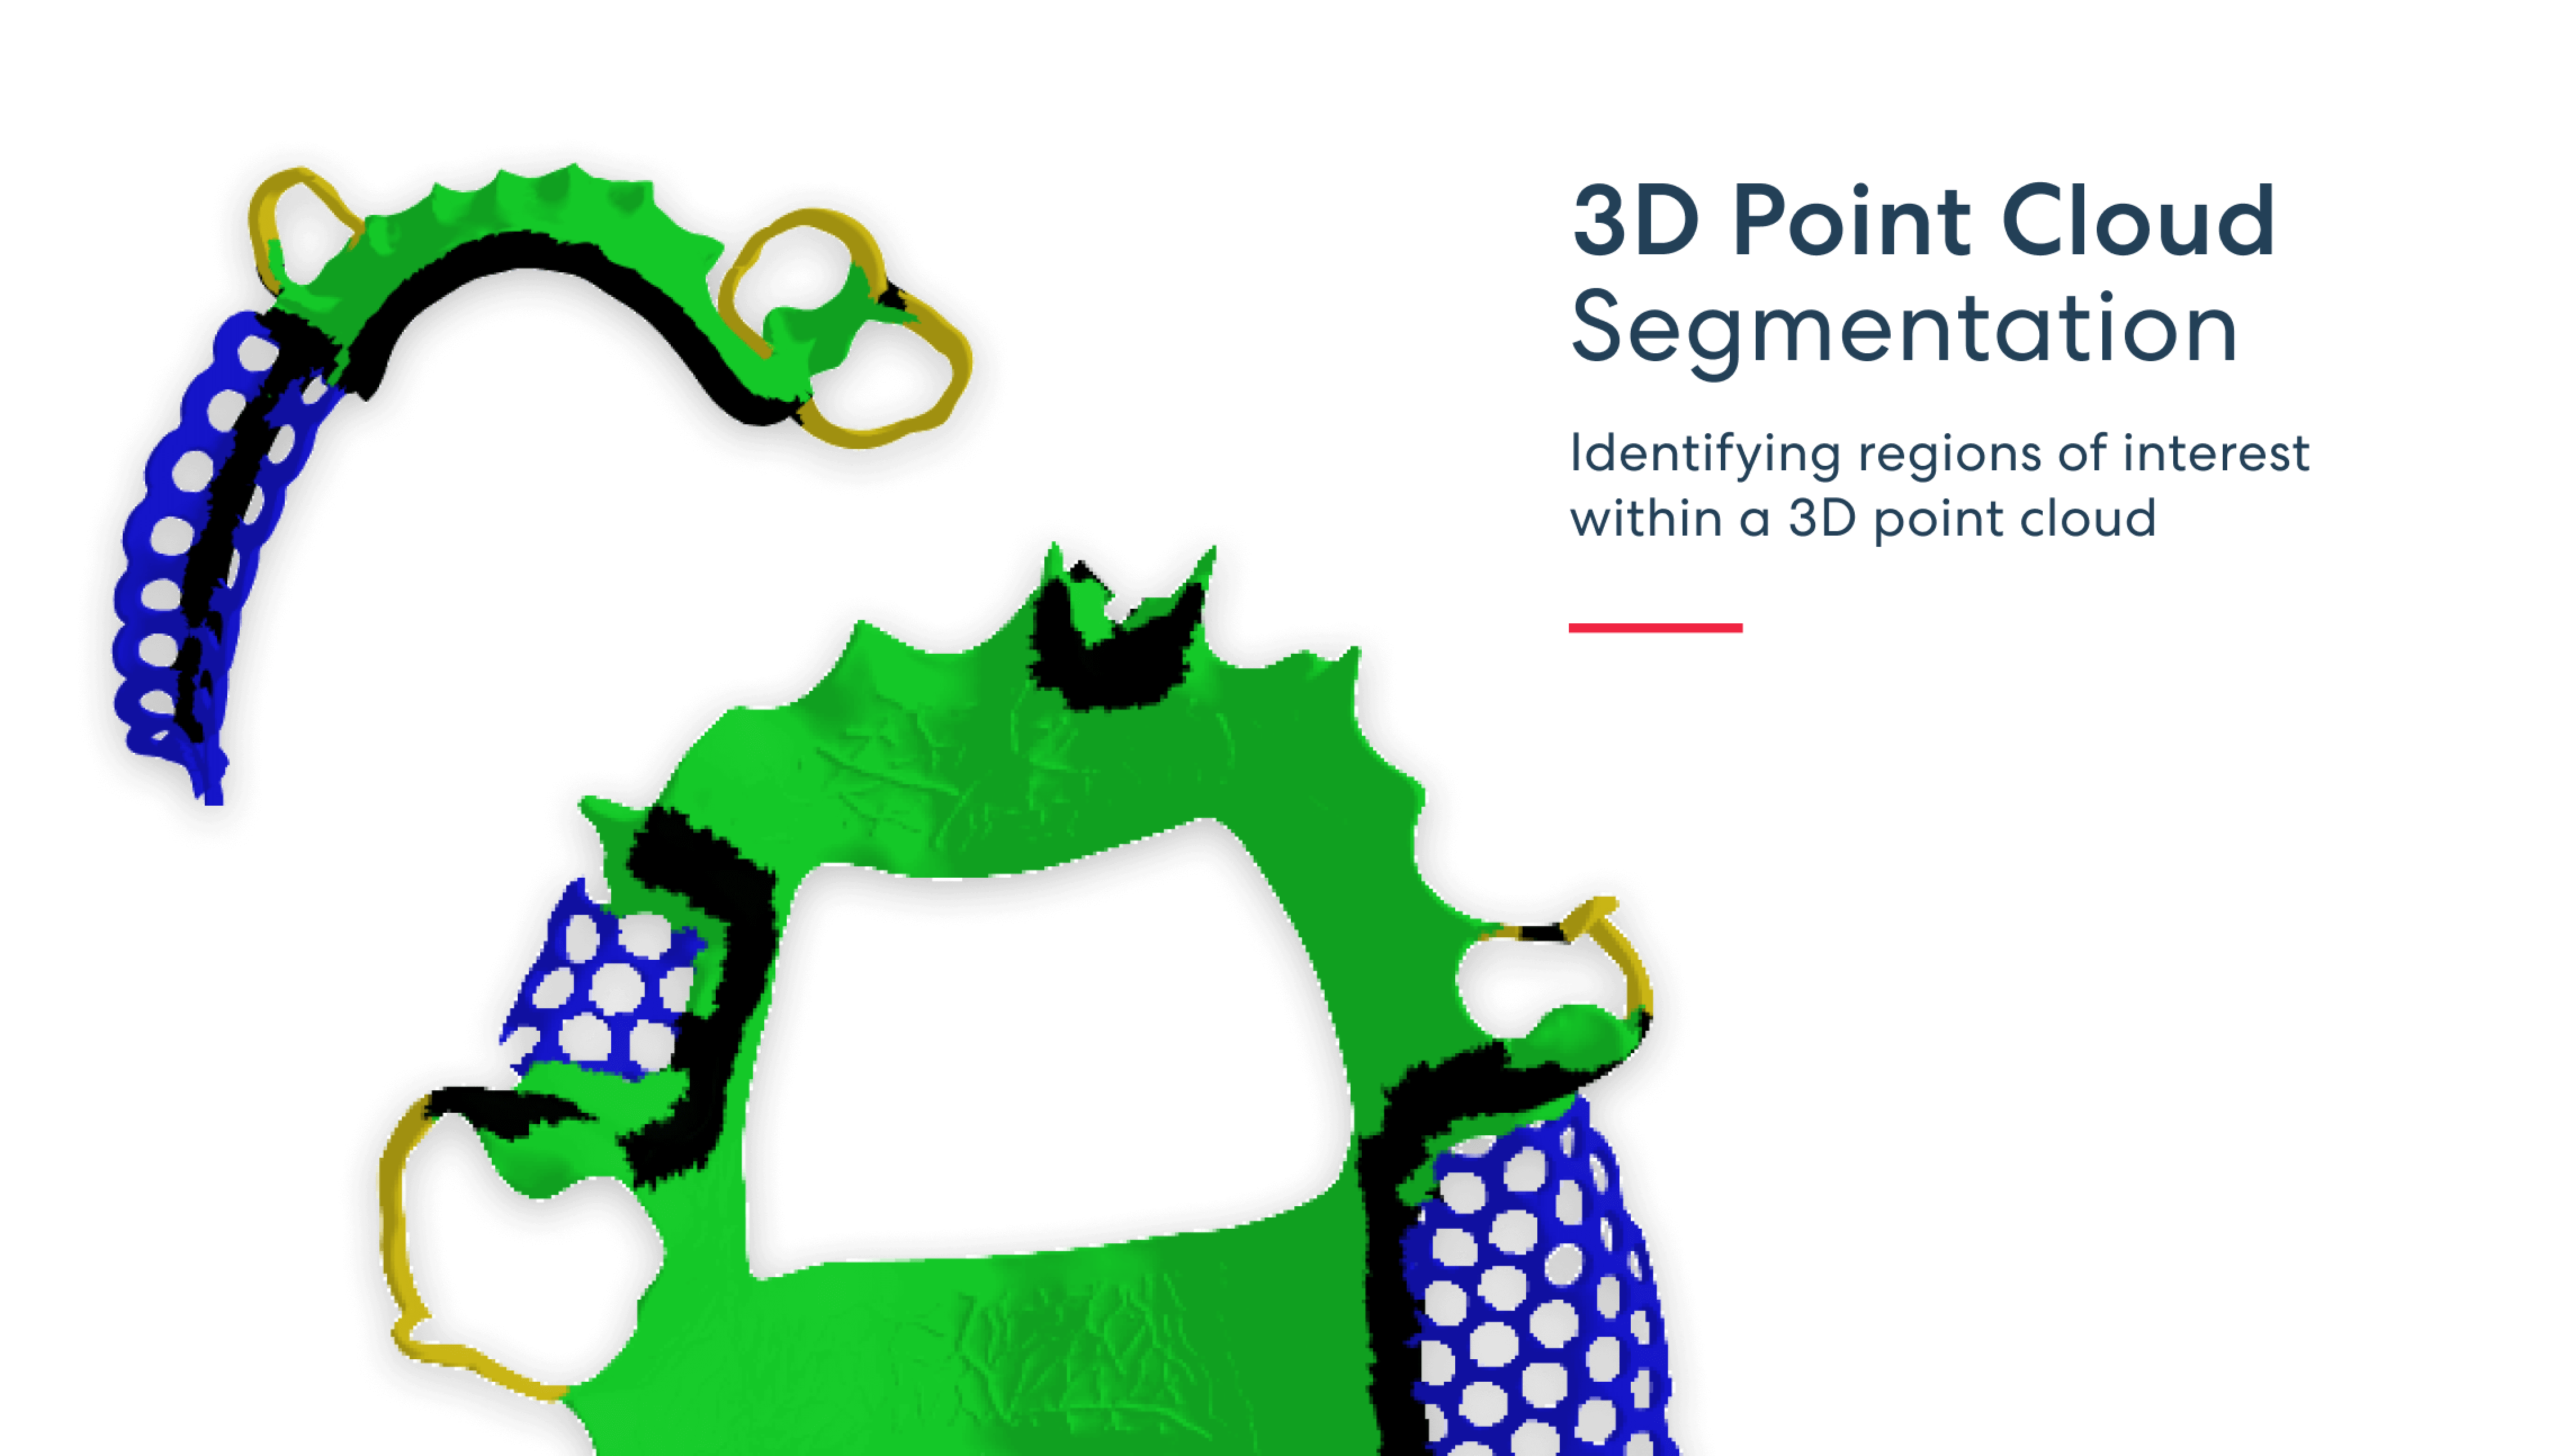 Segmentazione della nuvola di punti 3D: identificazione delle regioni di interesse all'interno di una nuvola di punti 3D